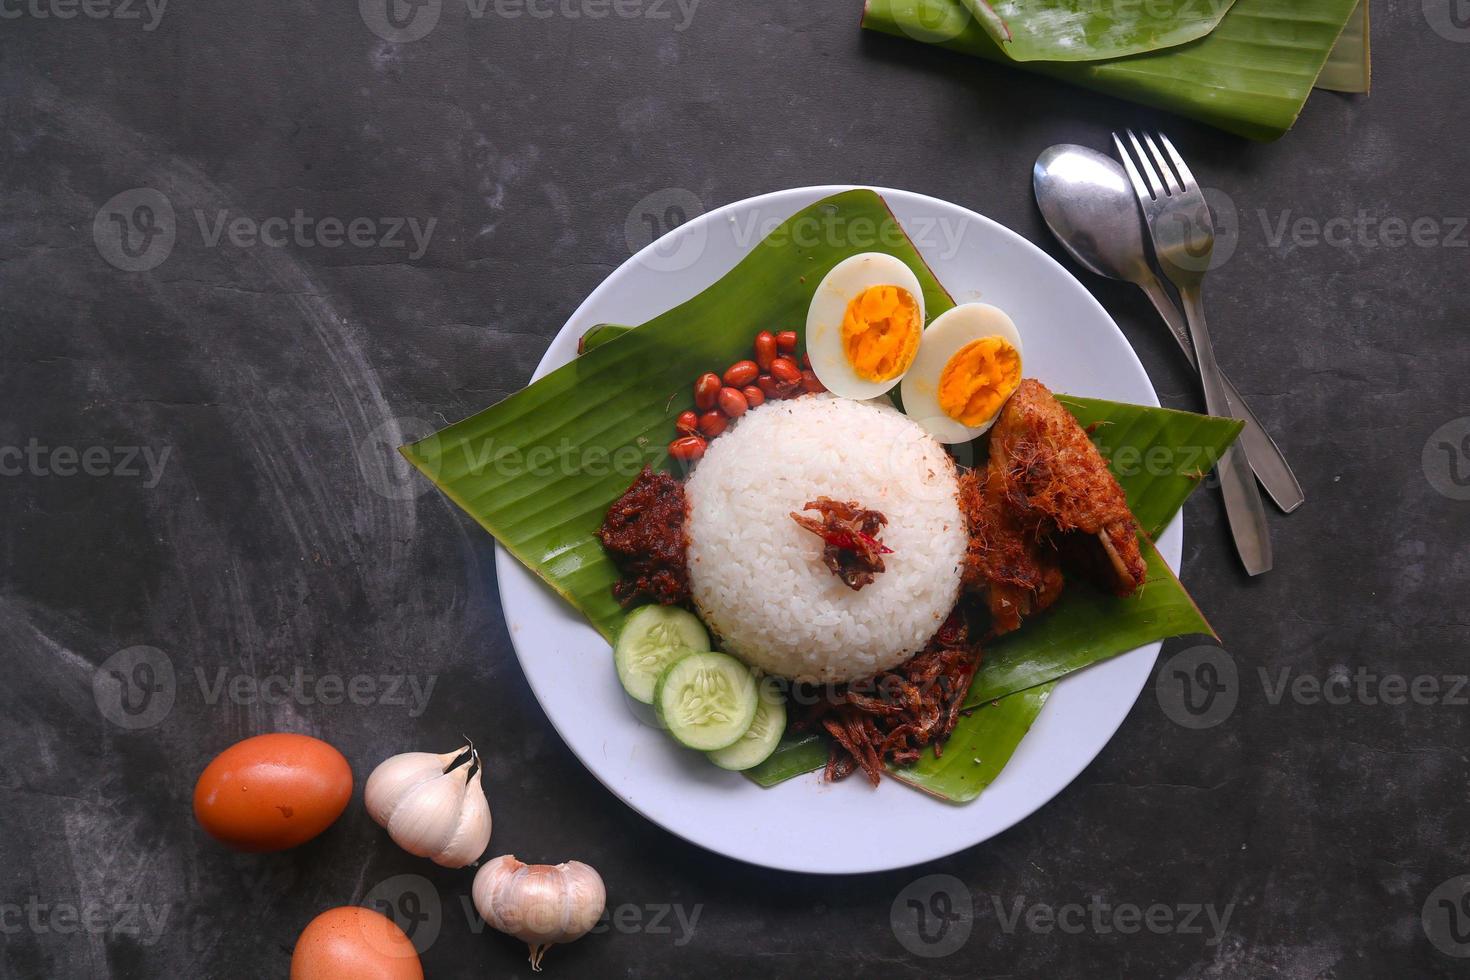 nasi lemak, est des œufs durs traditionnels malais, des haricots, des anchois, de la sauce chili, du concombre. du plat servi sur une feuille de bananier photo